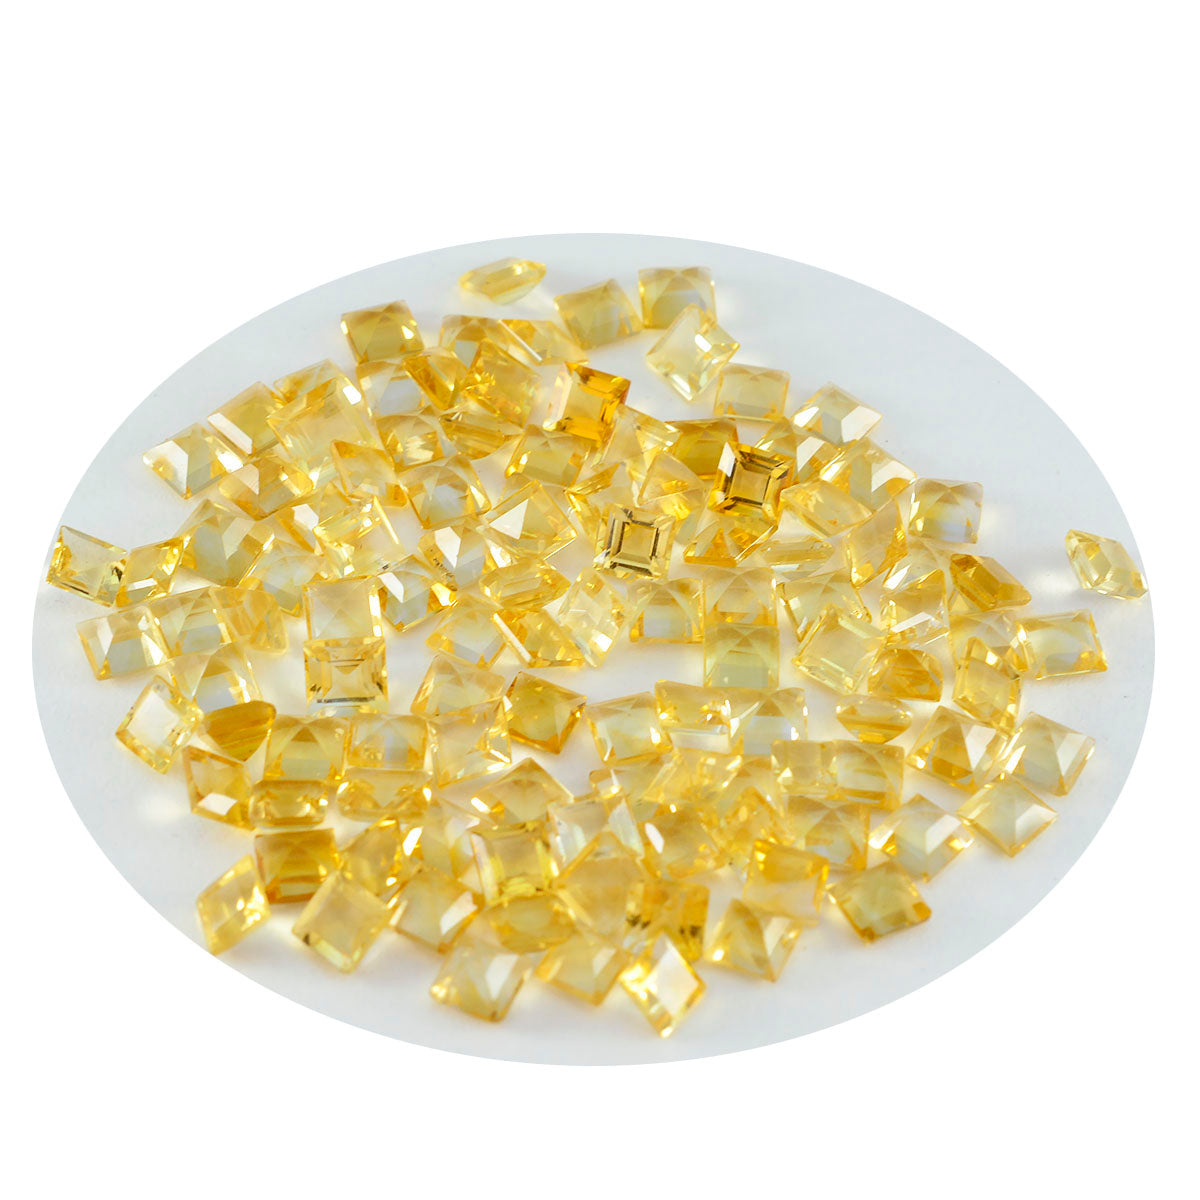 riyogems 1 шт. натуральный желтый цитрин ограненный 6x6 мм квадратной формы драгоценный камень привлекательного качества